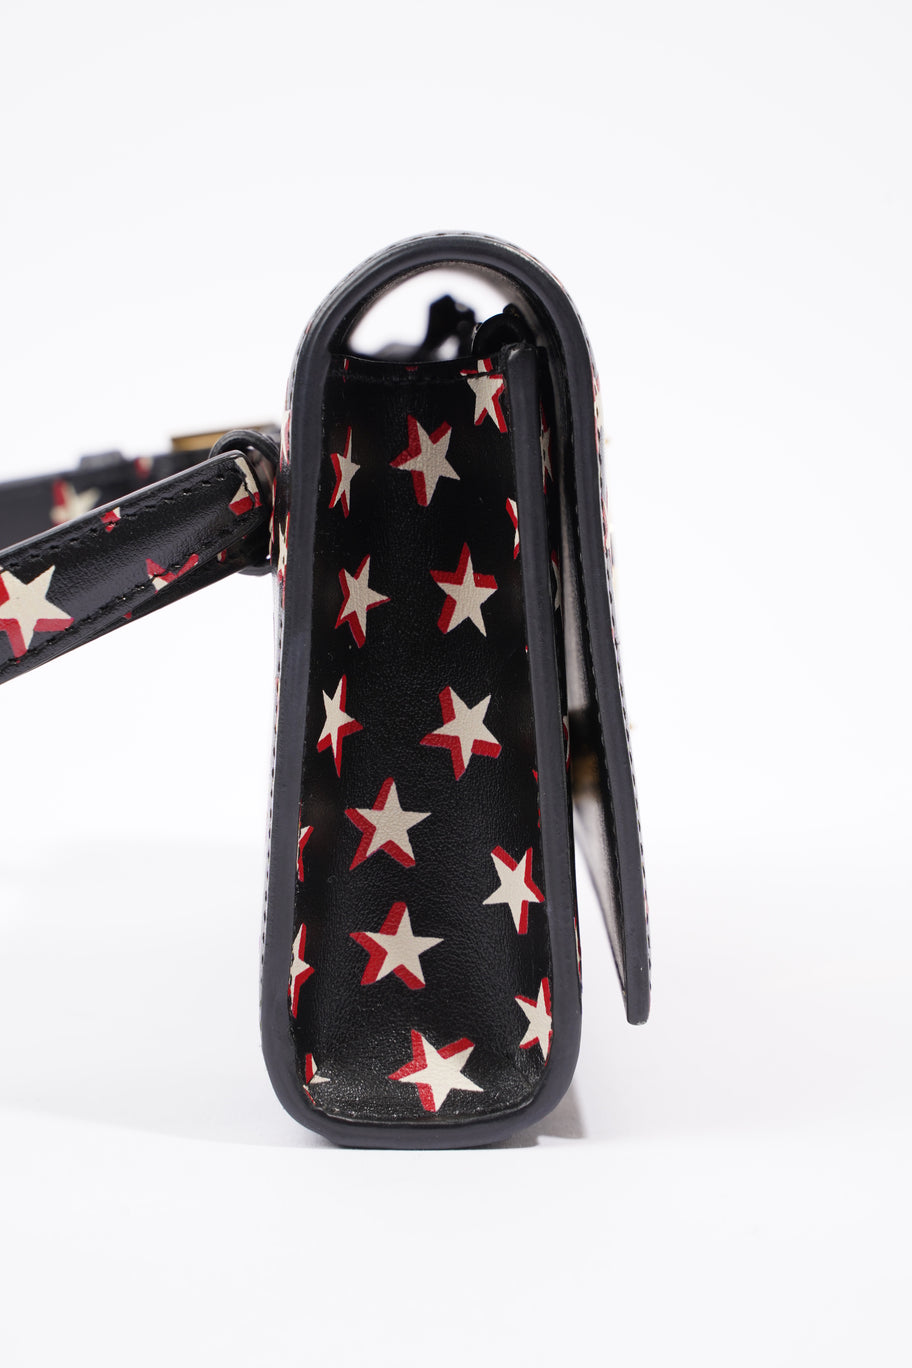 Kate Belt Bag Black / Stars Leather Image 6